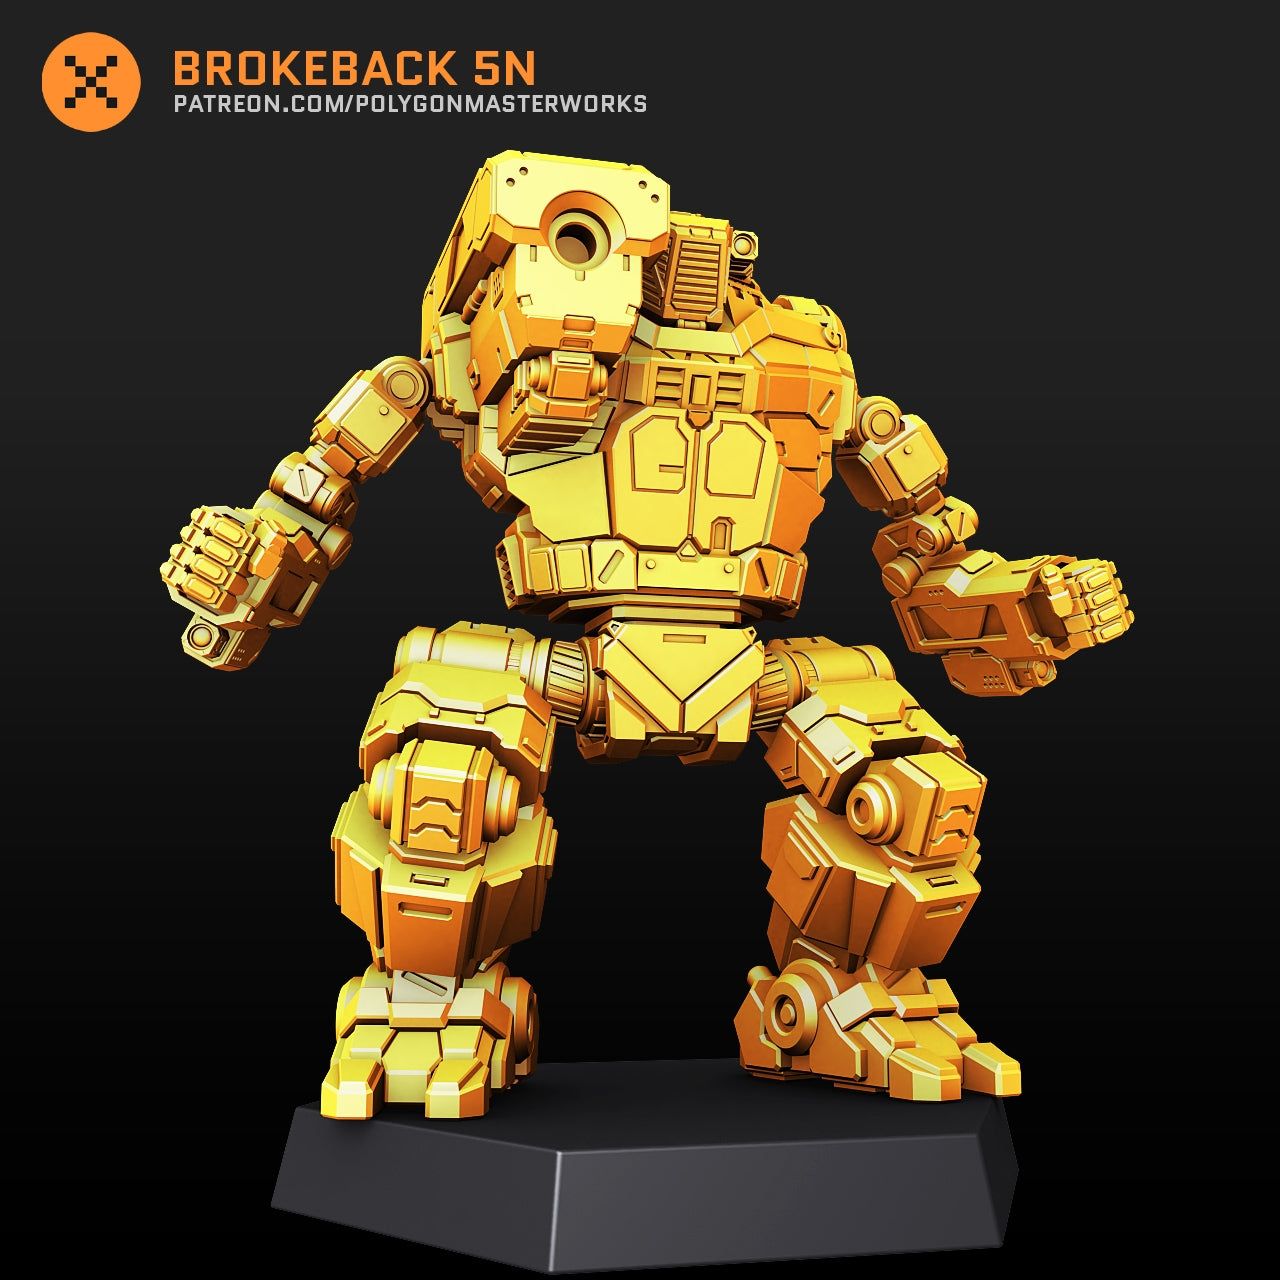 Brokeback 5N (By PMW) Alternate Battletech Mechwarrior Miniatures